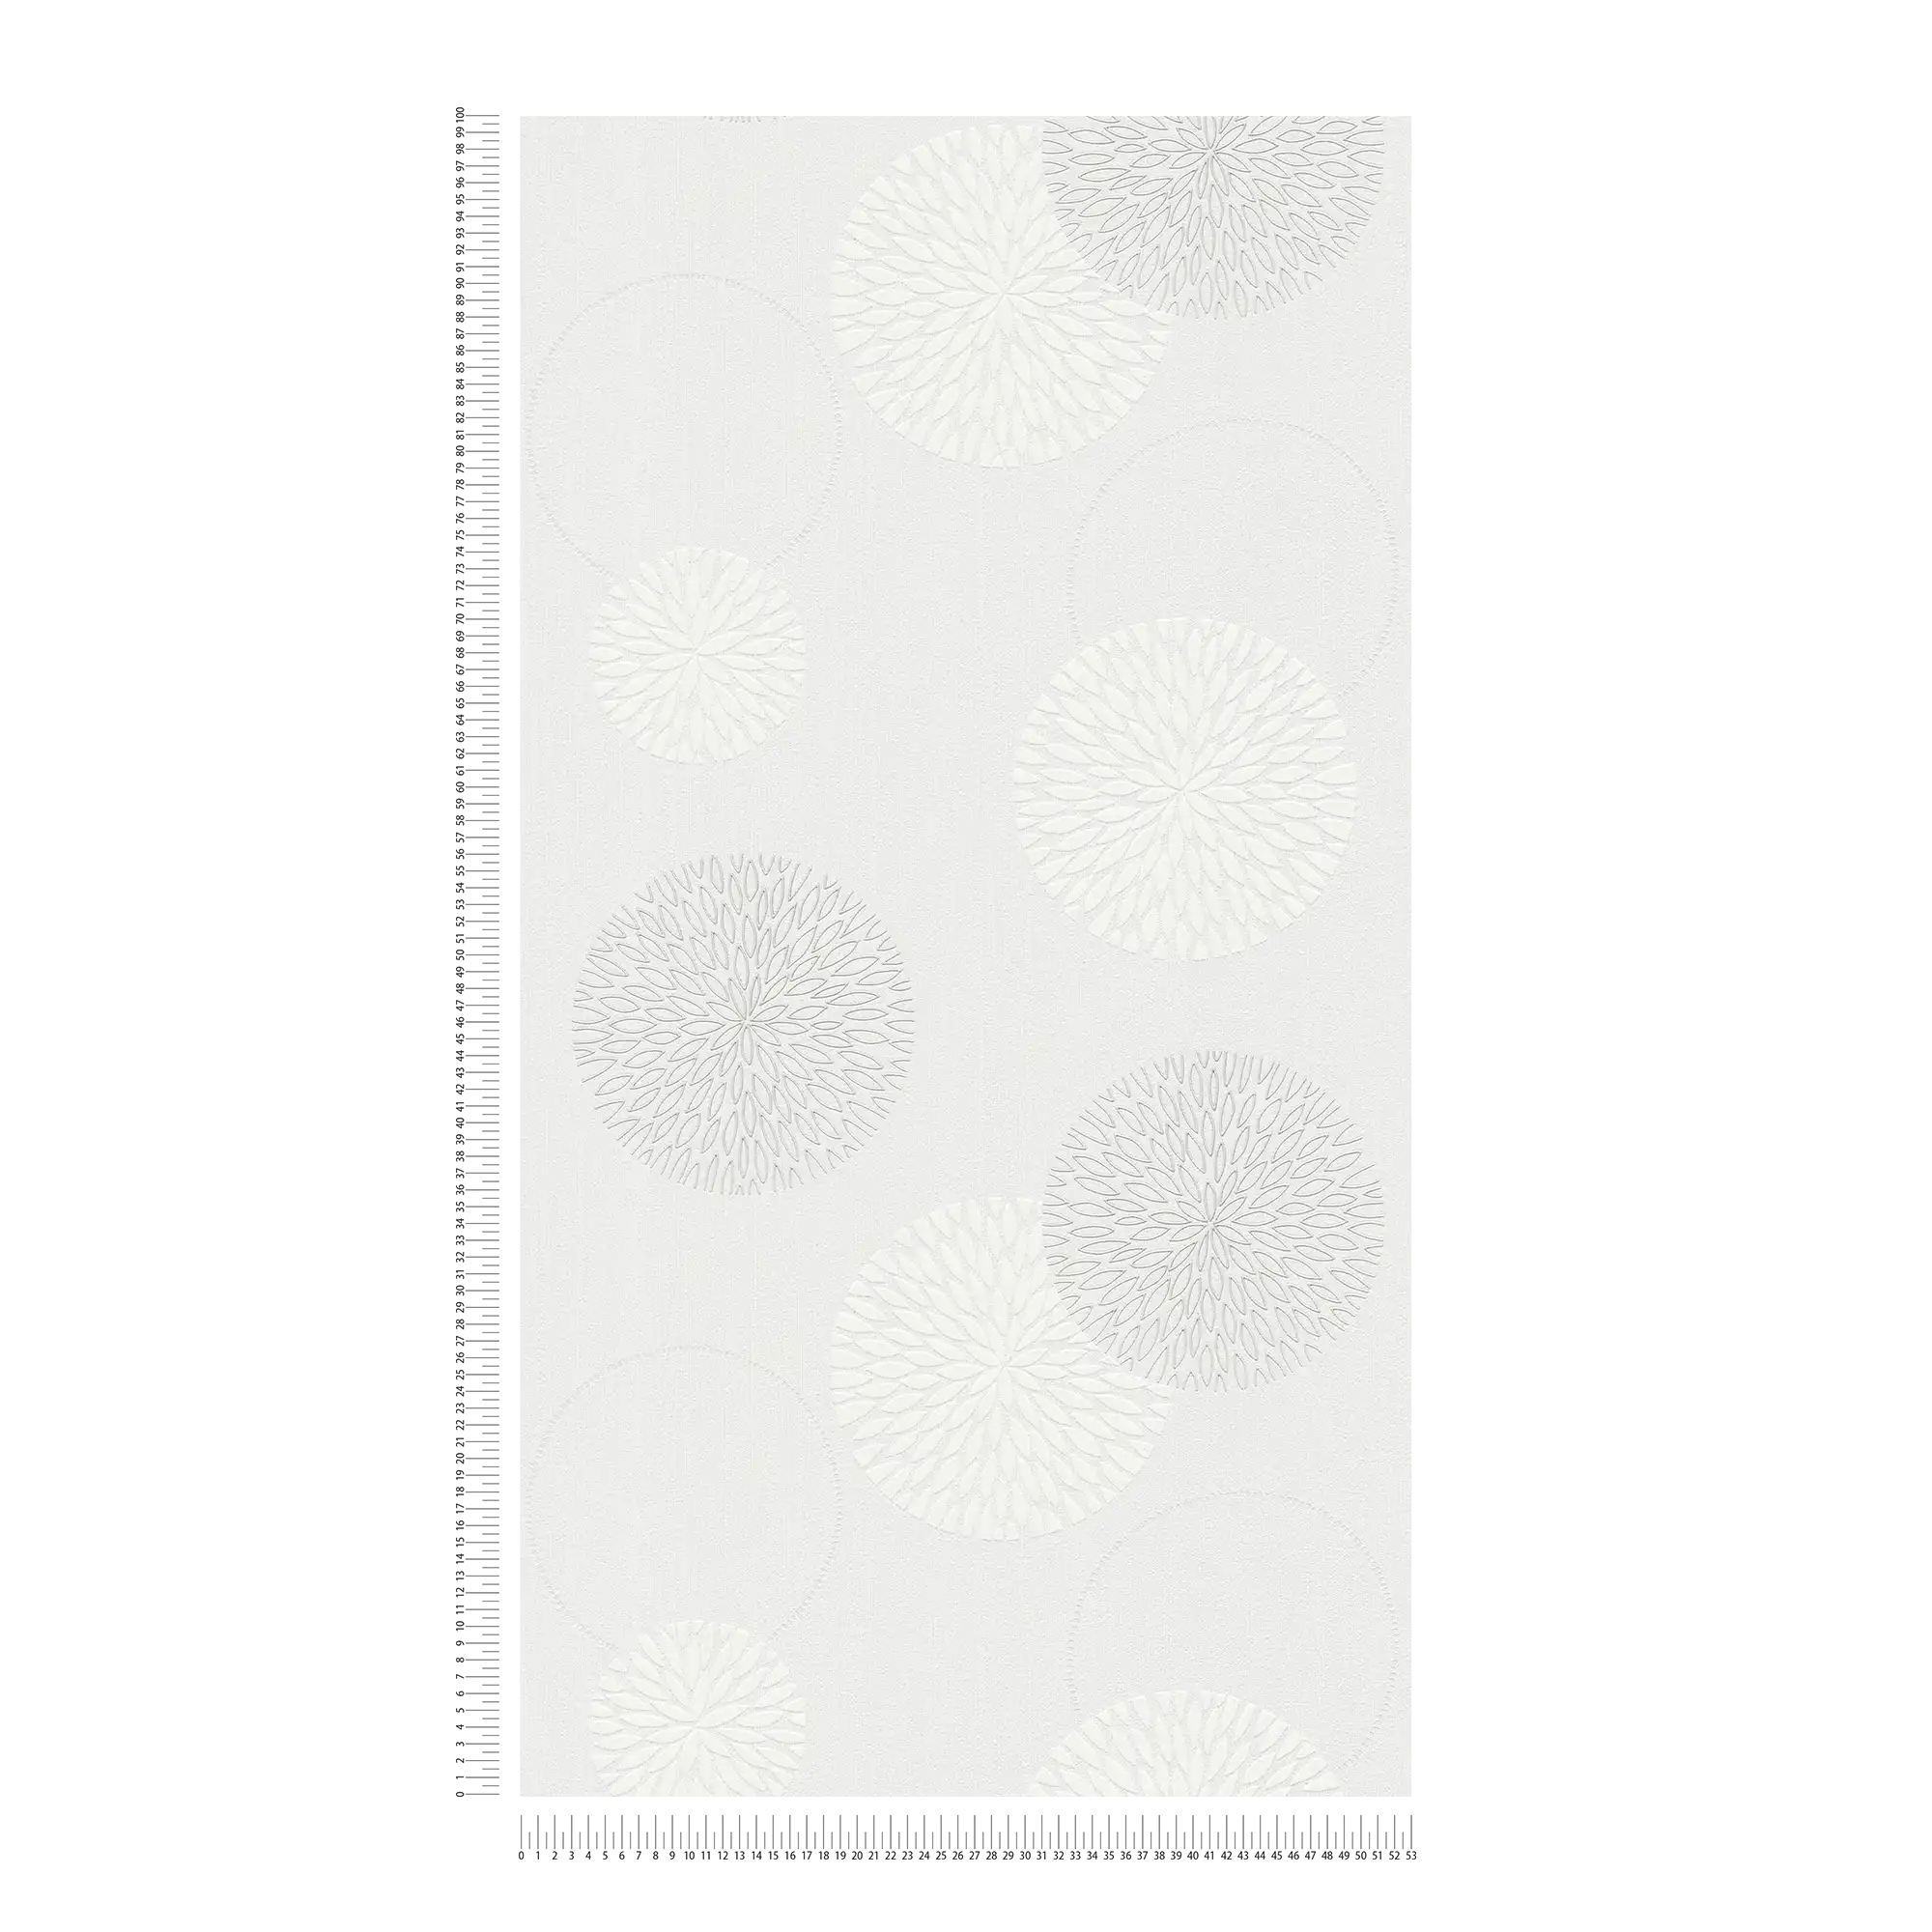             Papier peint intissé fleurs design abstrait - crème, blanc
        